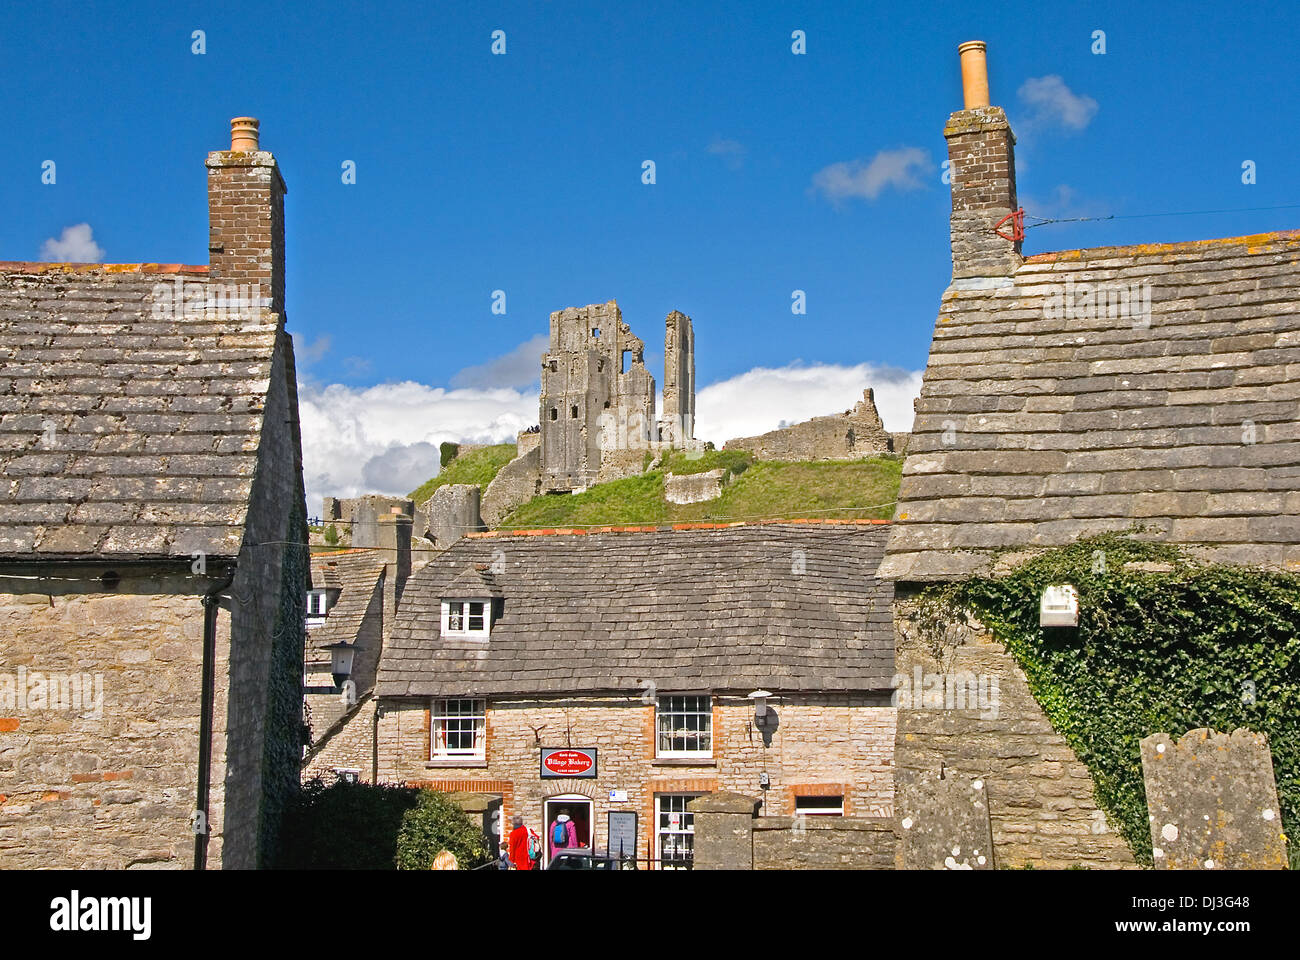 Die Ruinen von Corfe Castle stand hoch über dem kleinen Dorf gleichen Namens in Dorset, England. Stockfoto